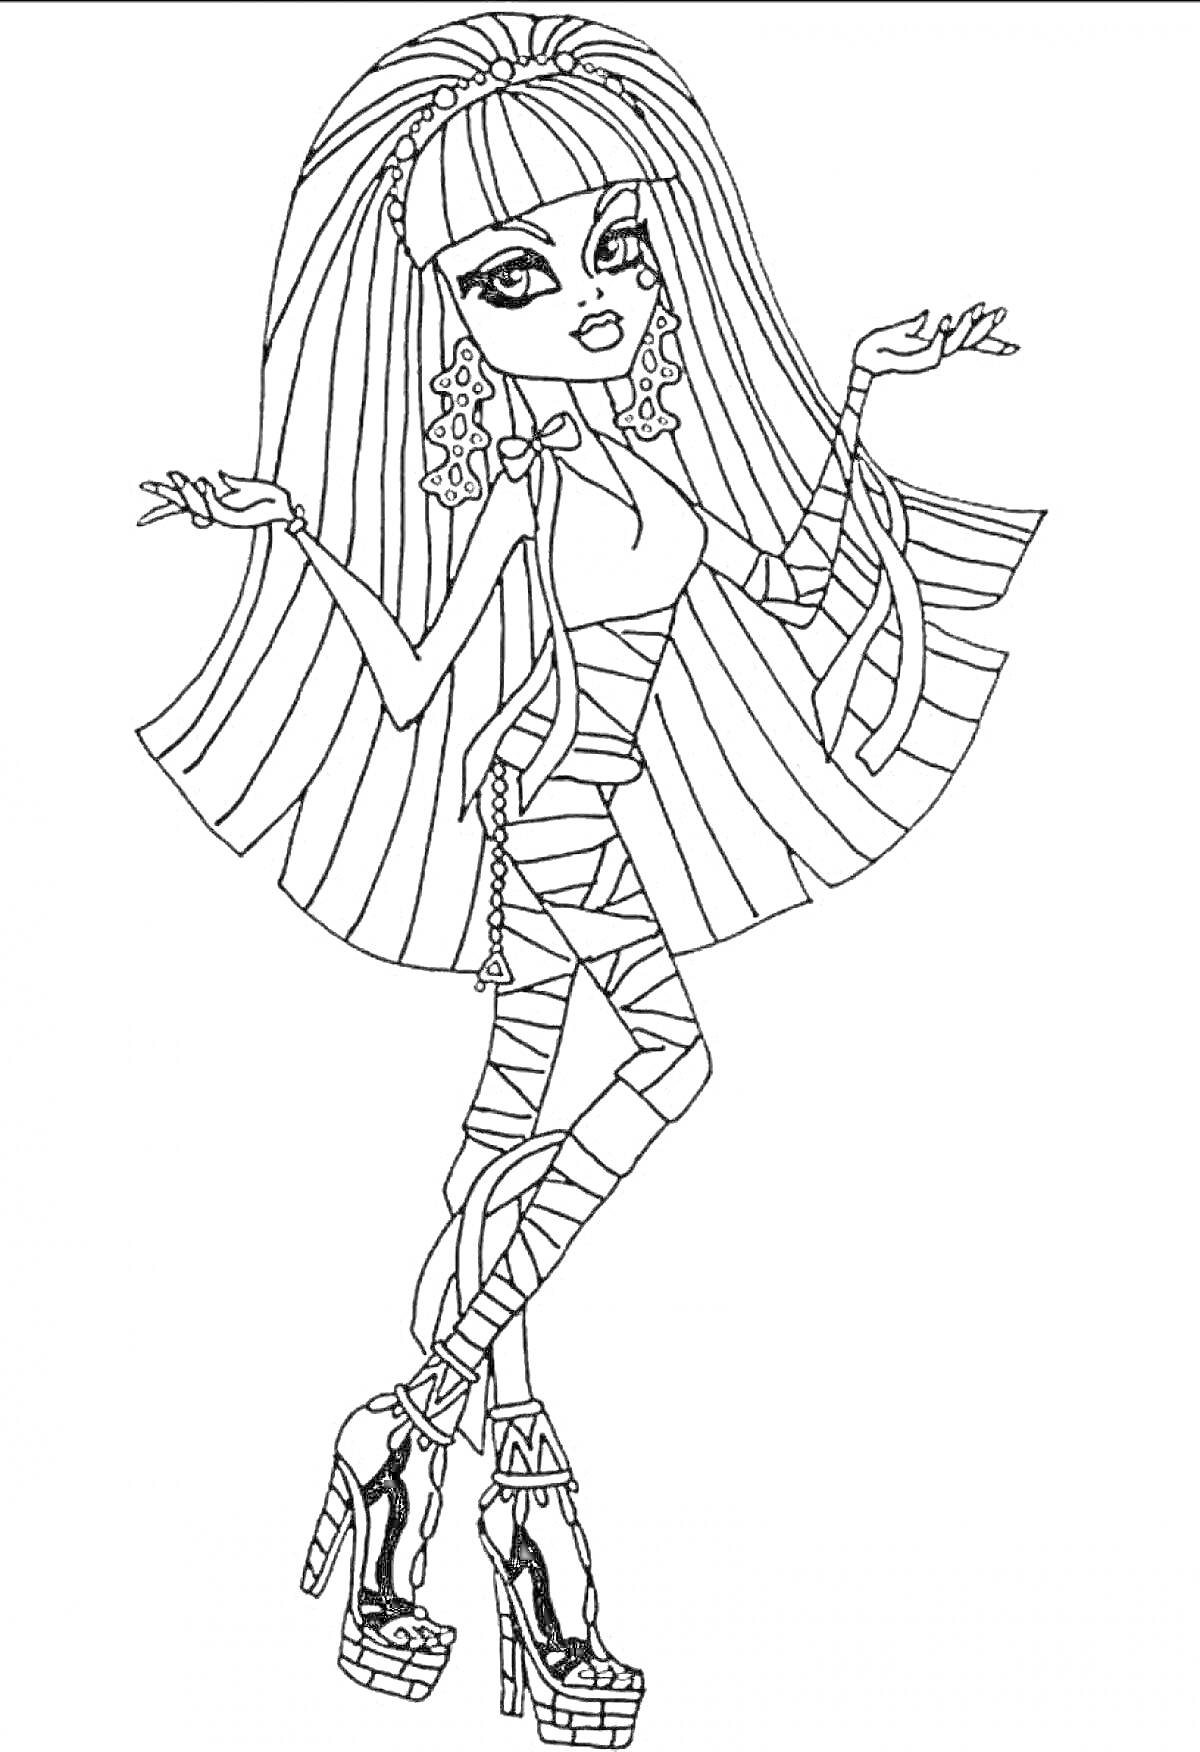 Раскраска раскраска с куклой монстер хай в платье, с распущенными волосами, в высоких туфлях на платформе